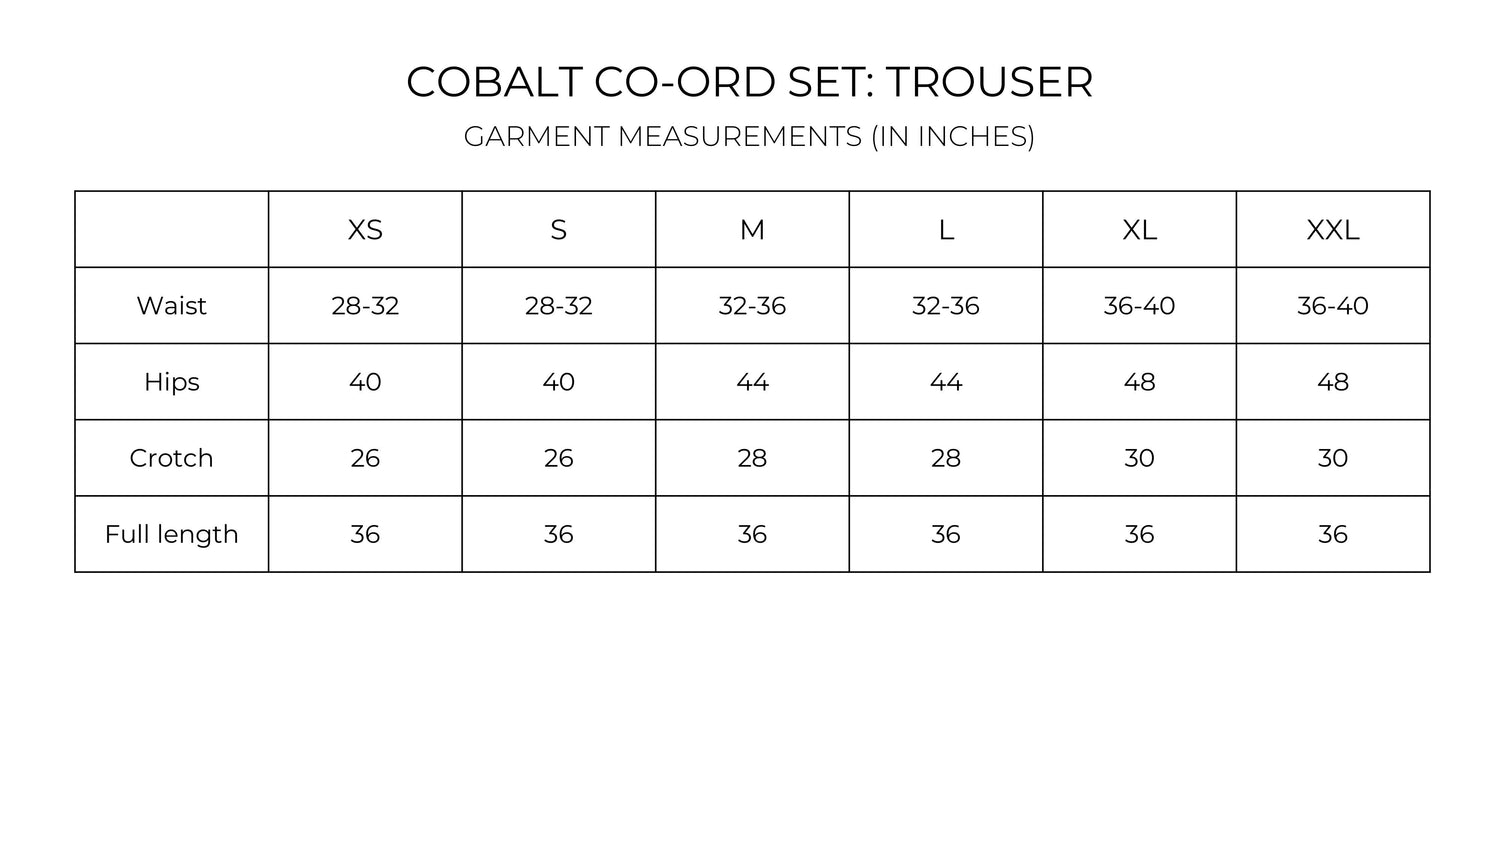 Cobalt Co-ord set